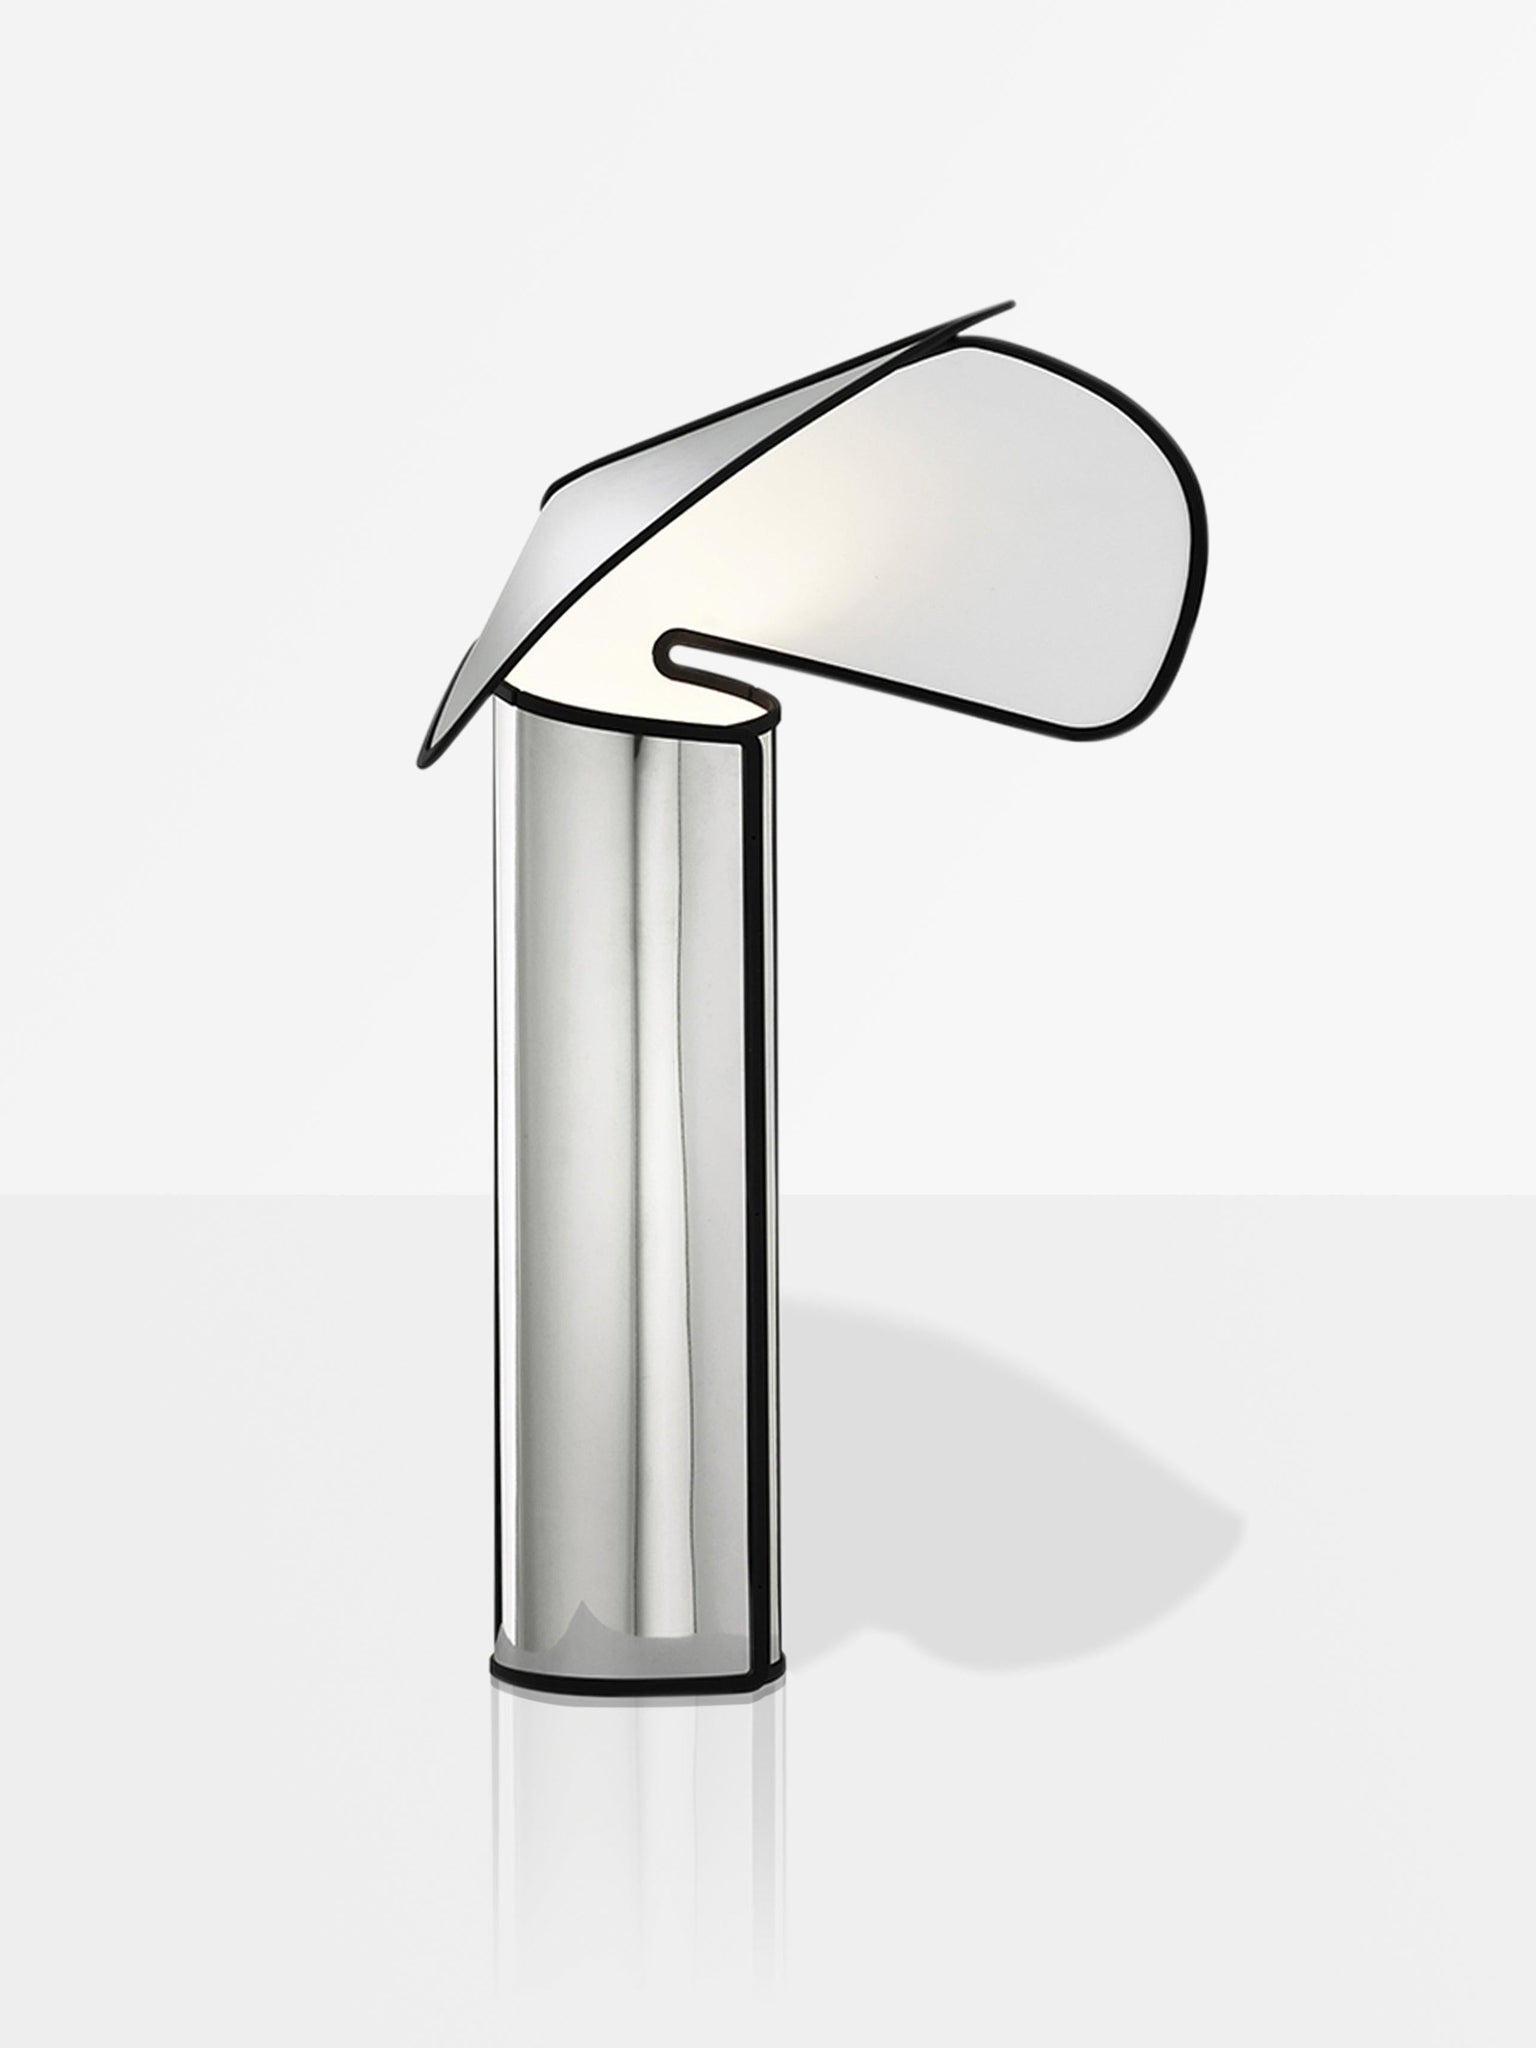 Bi-Rite Studio Chiara Table Lamp by Flos